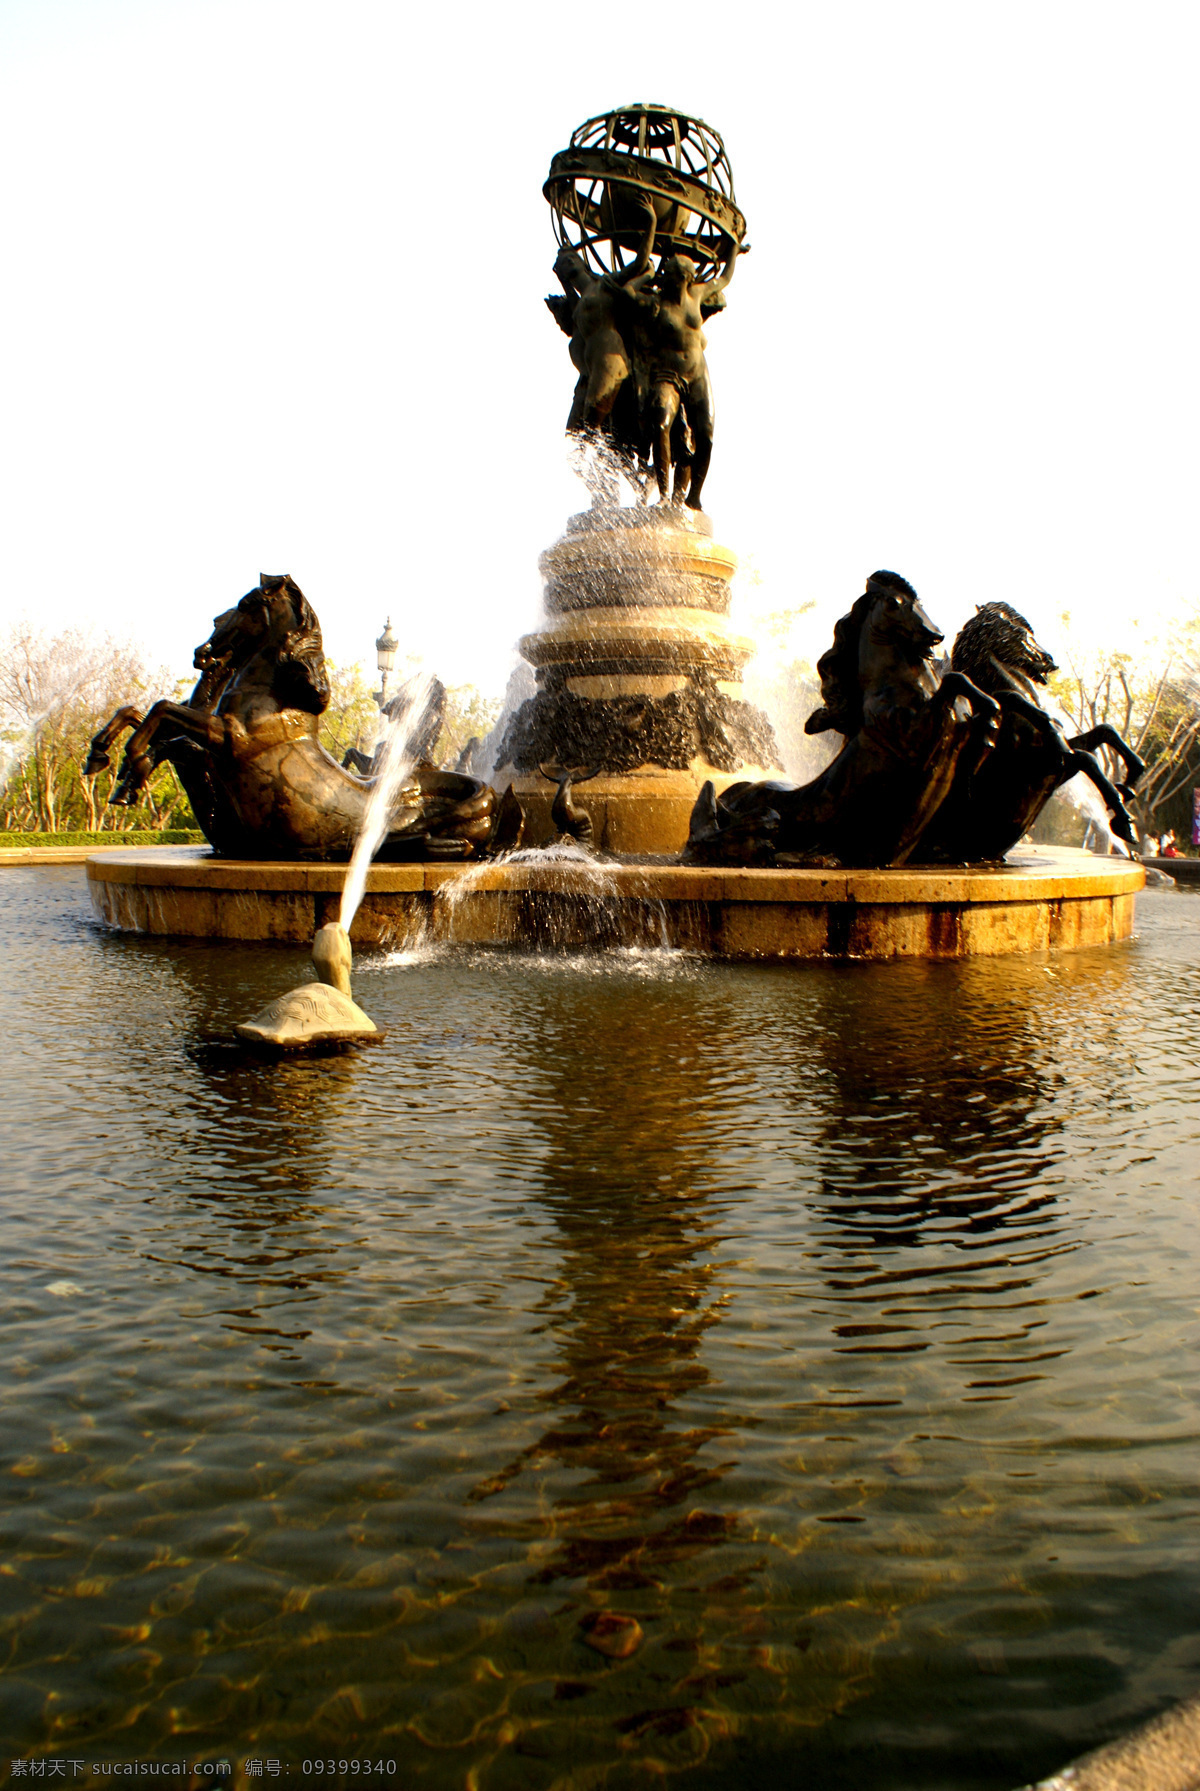 雕塑艺术 雕塑 水池 马 石龟喷水 雕塑欧洲人物 文化艺术 摄影图库